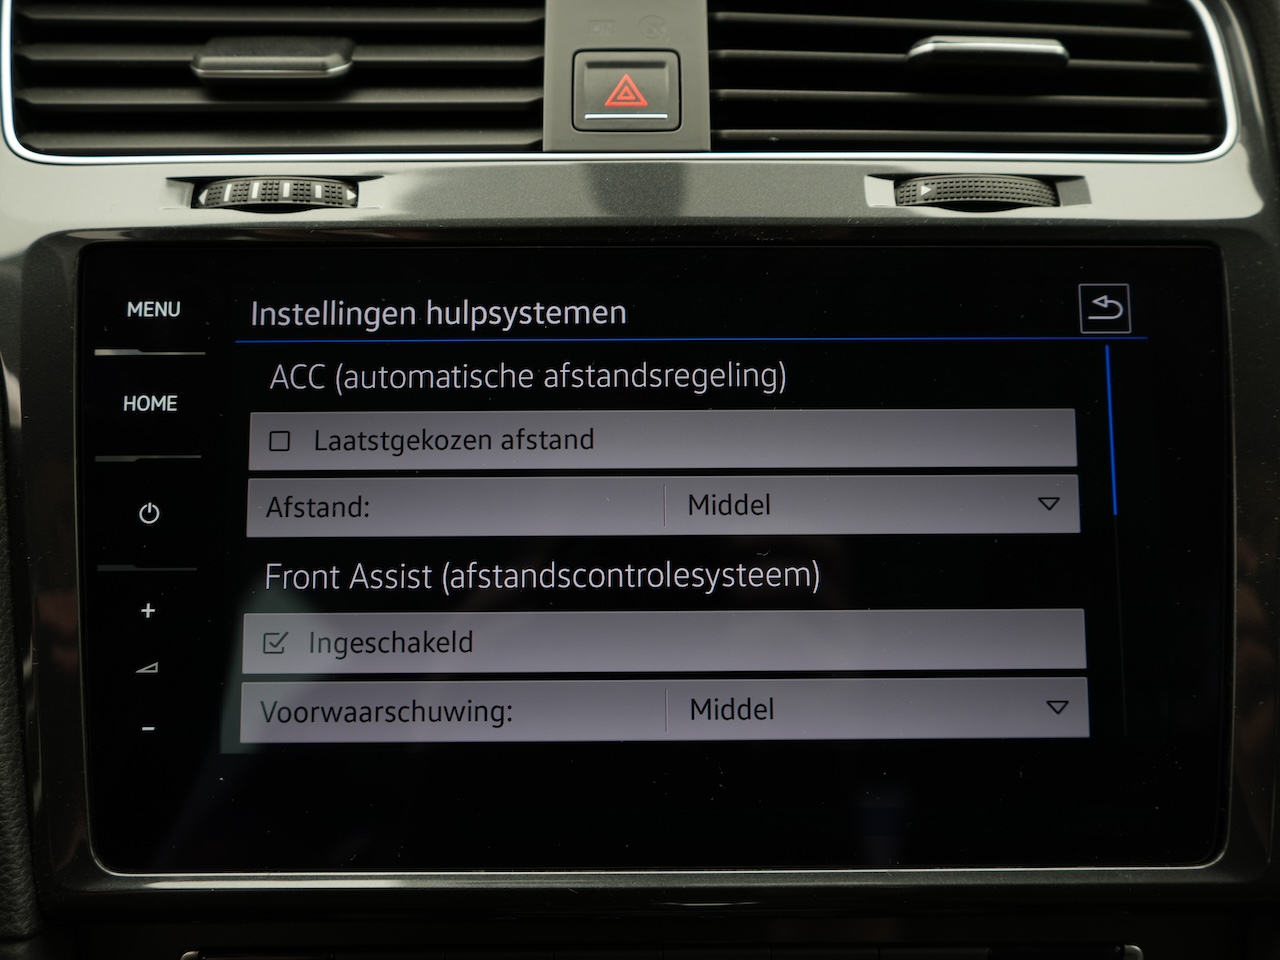 Volkswagen e-Golf (RN451P) met abonnement